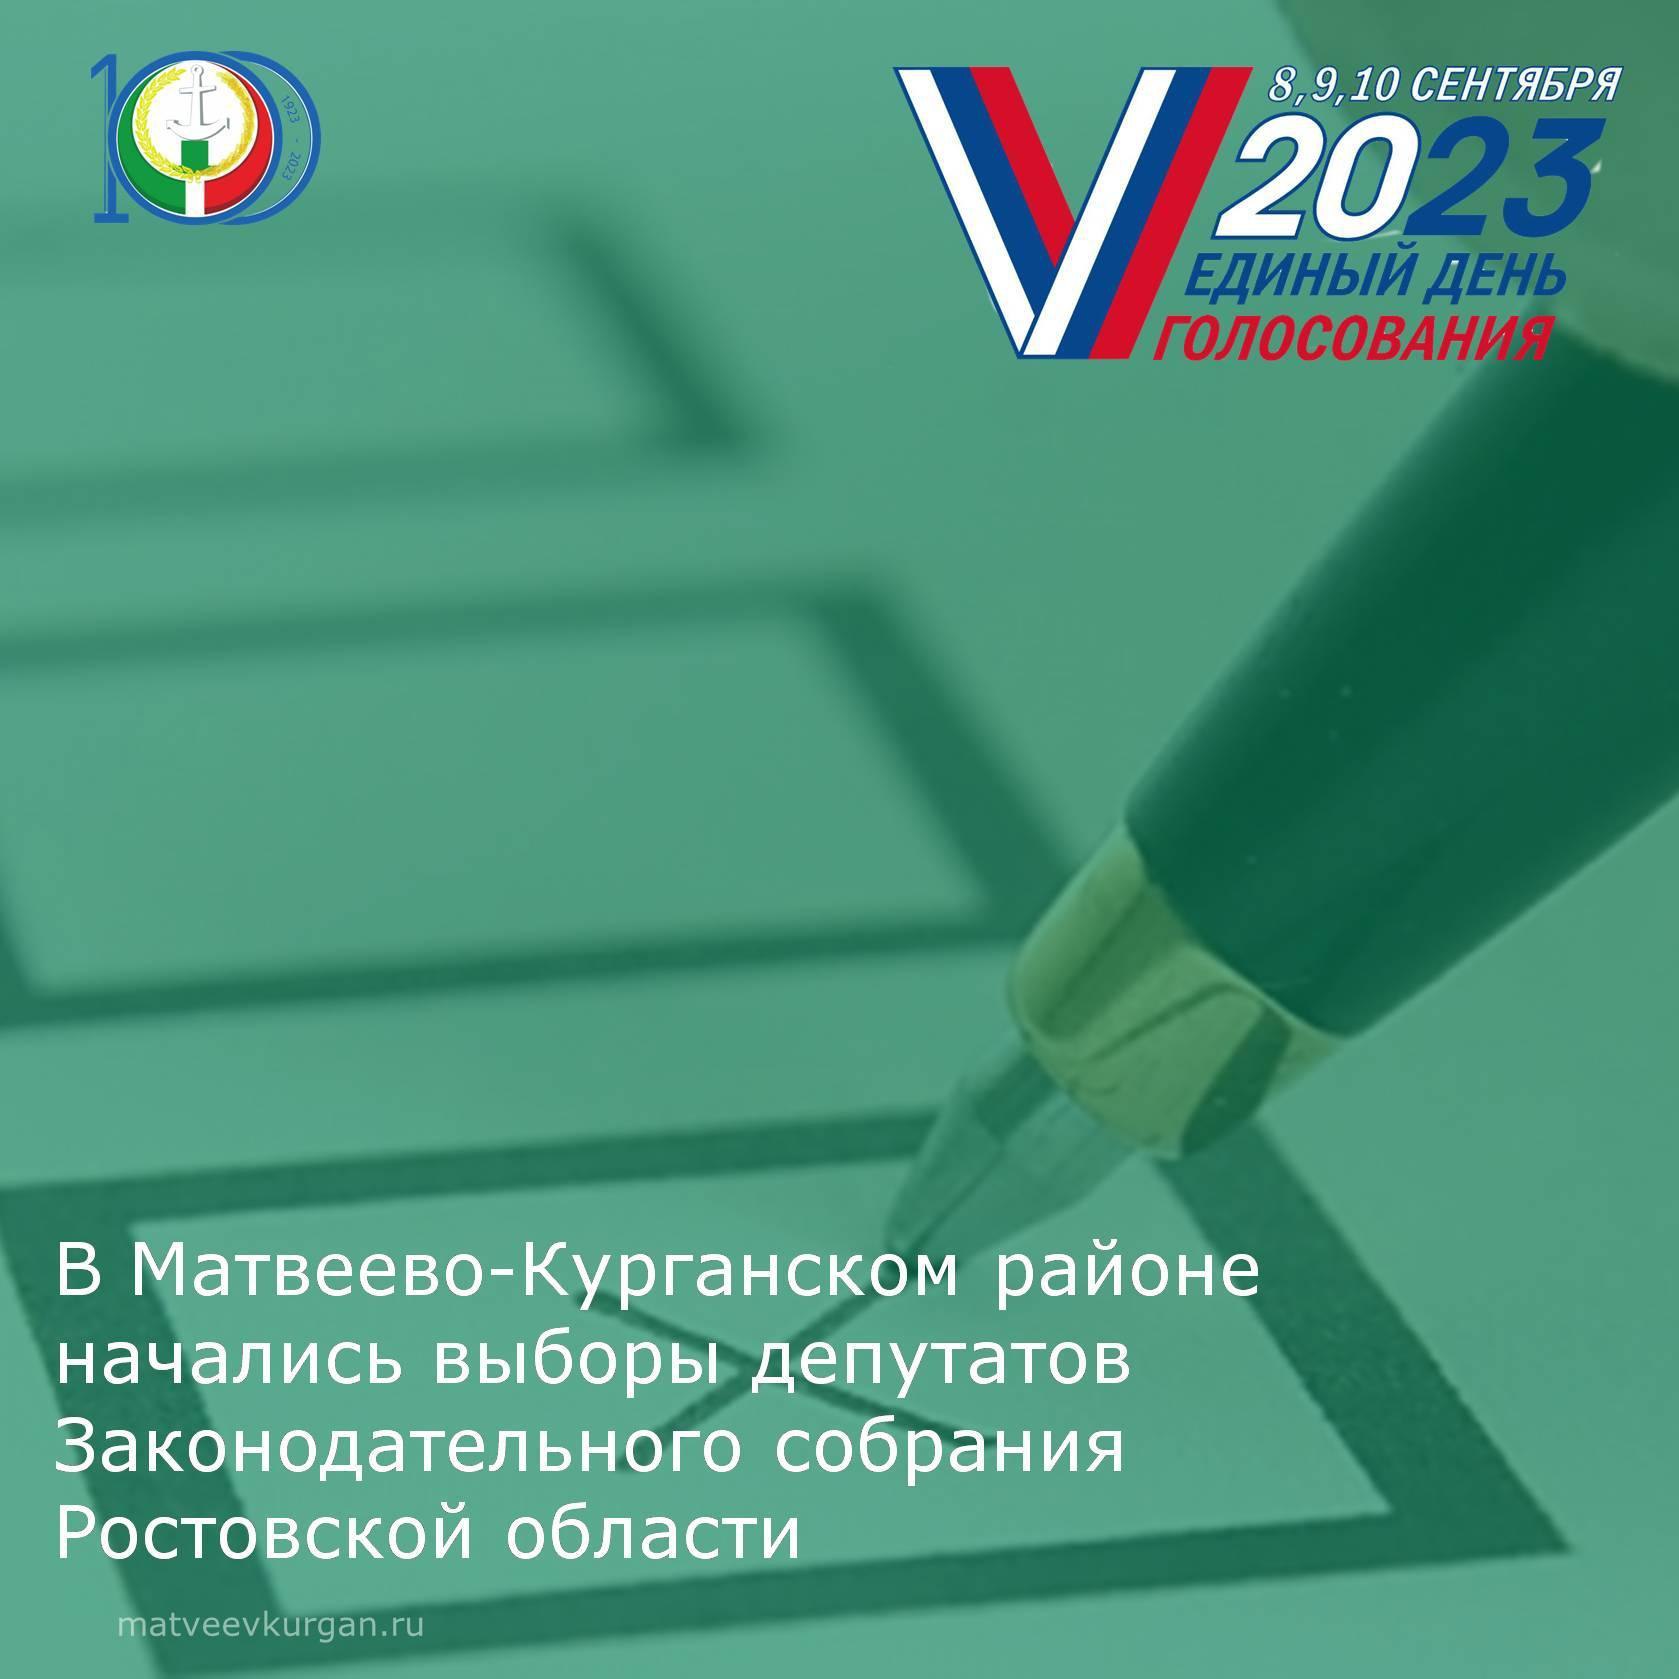 В Матвеево-Курганском района началась выборы депутатов Законодательного собрания Ростовской области